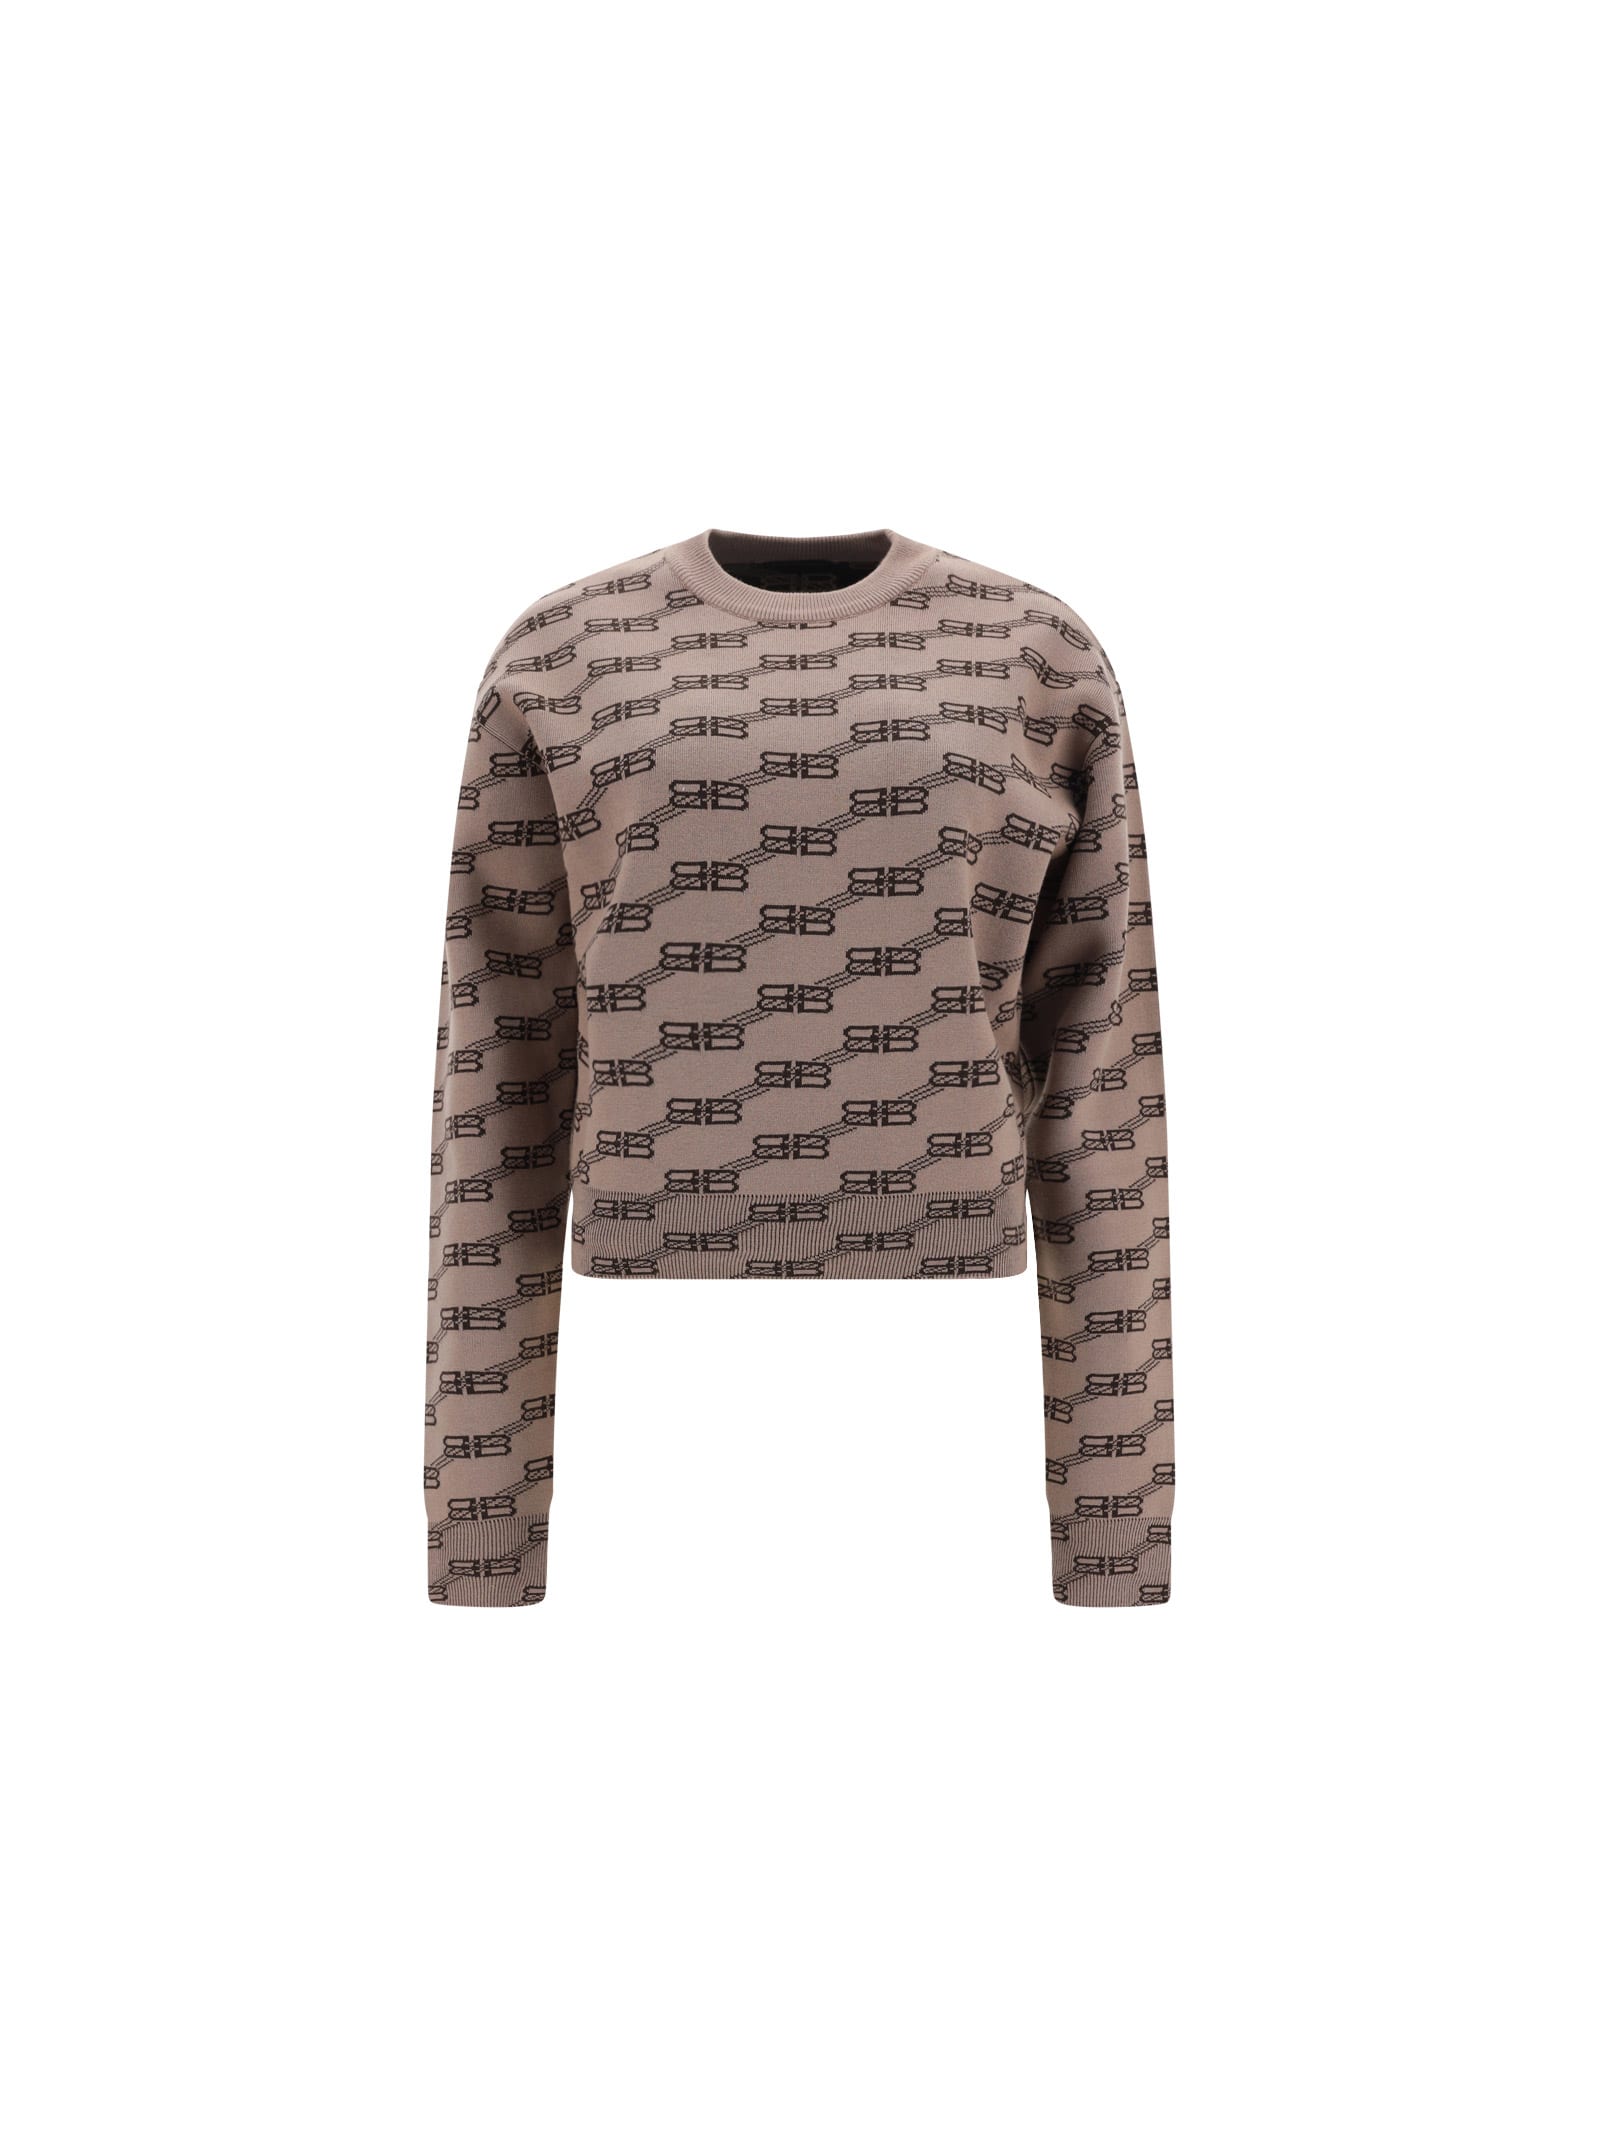 Balenciaga Sweater